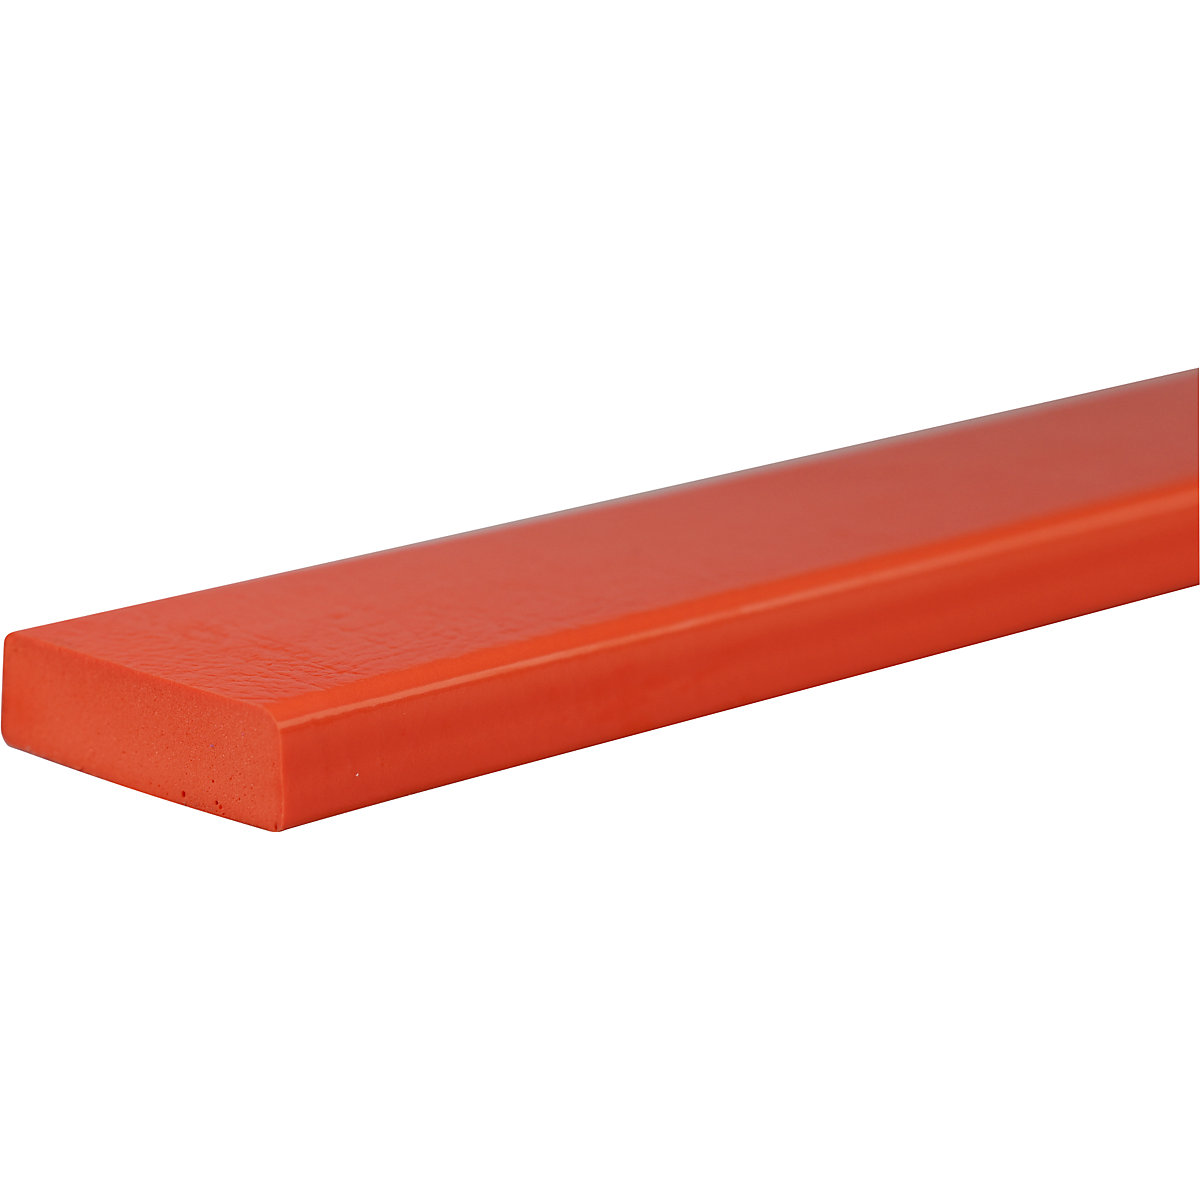 Knuffi®-oppervlaktebescherming – SHG, type S, stuk van 1 m, rood-20